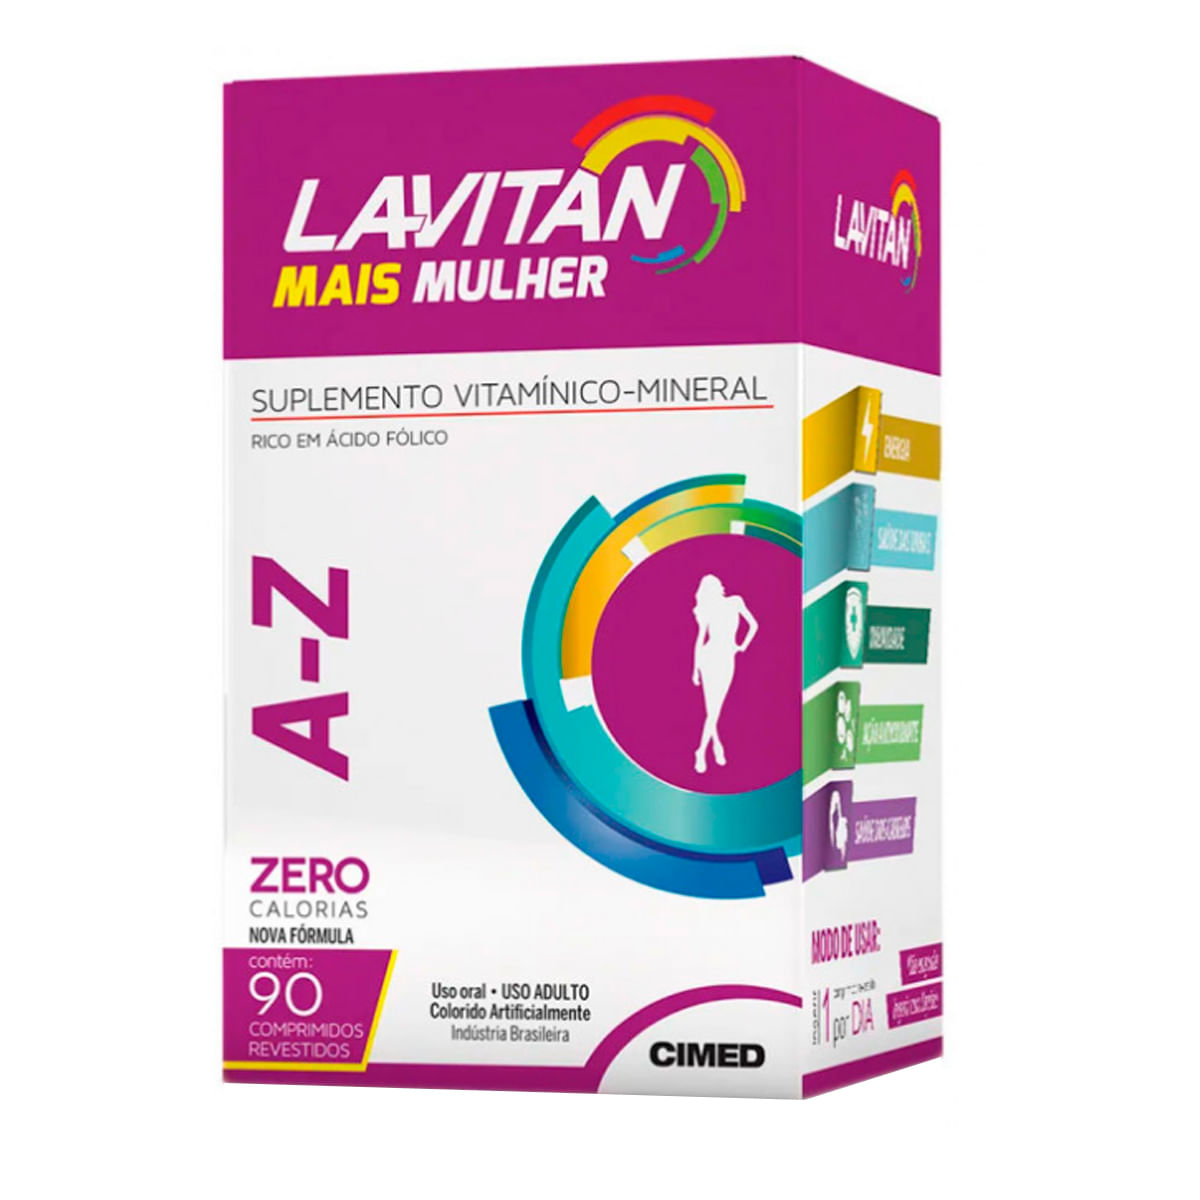 Lavitan A- Z Mulher Suplemento Vitamínico- Mineral 90 cápsulas CIMED